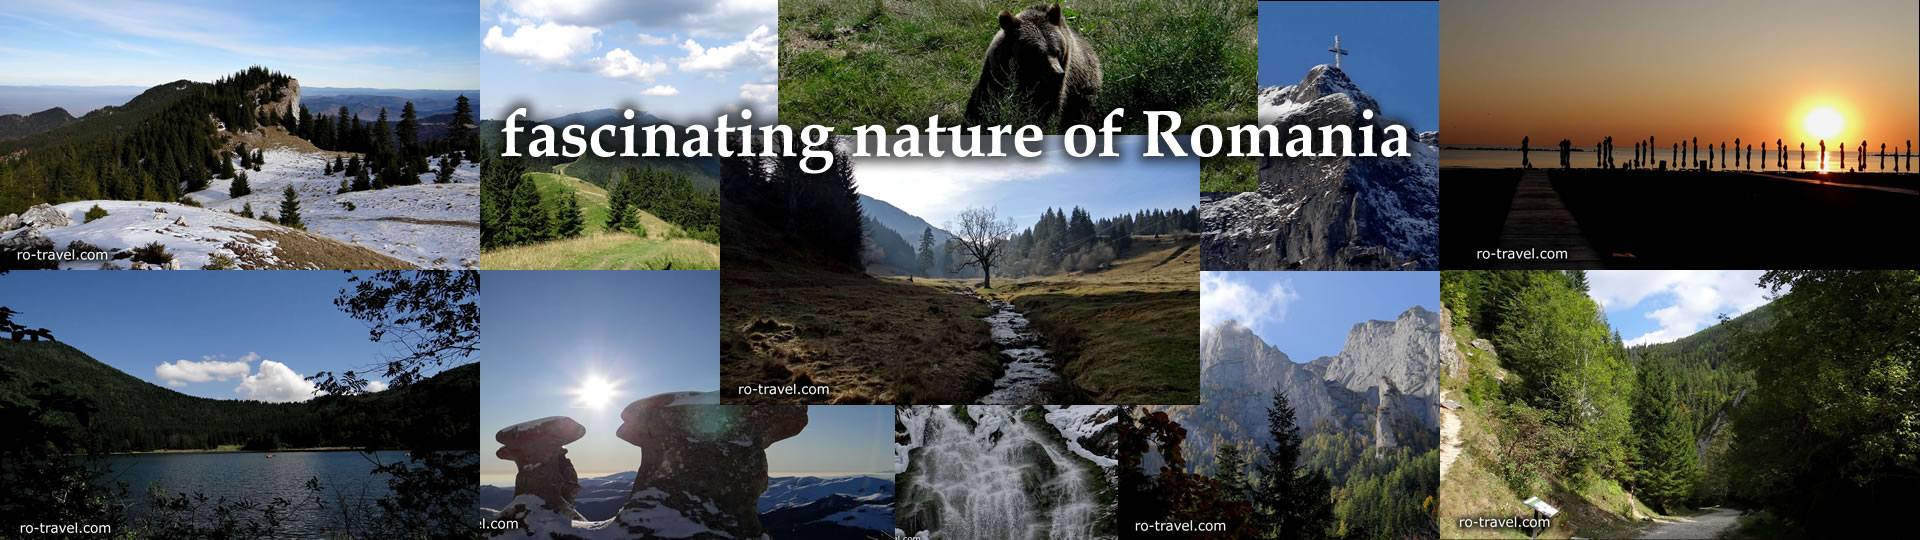 fascinating nature of Romania